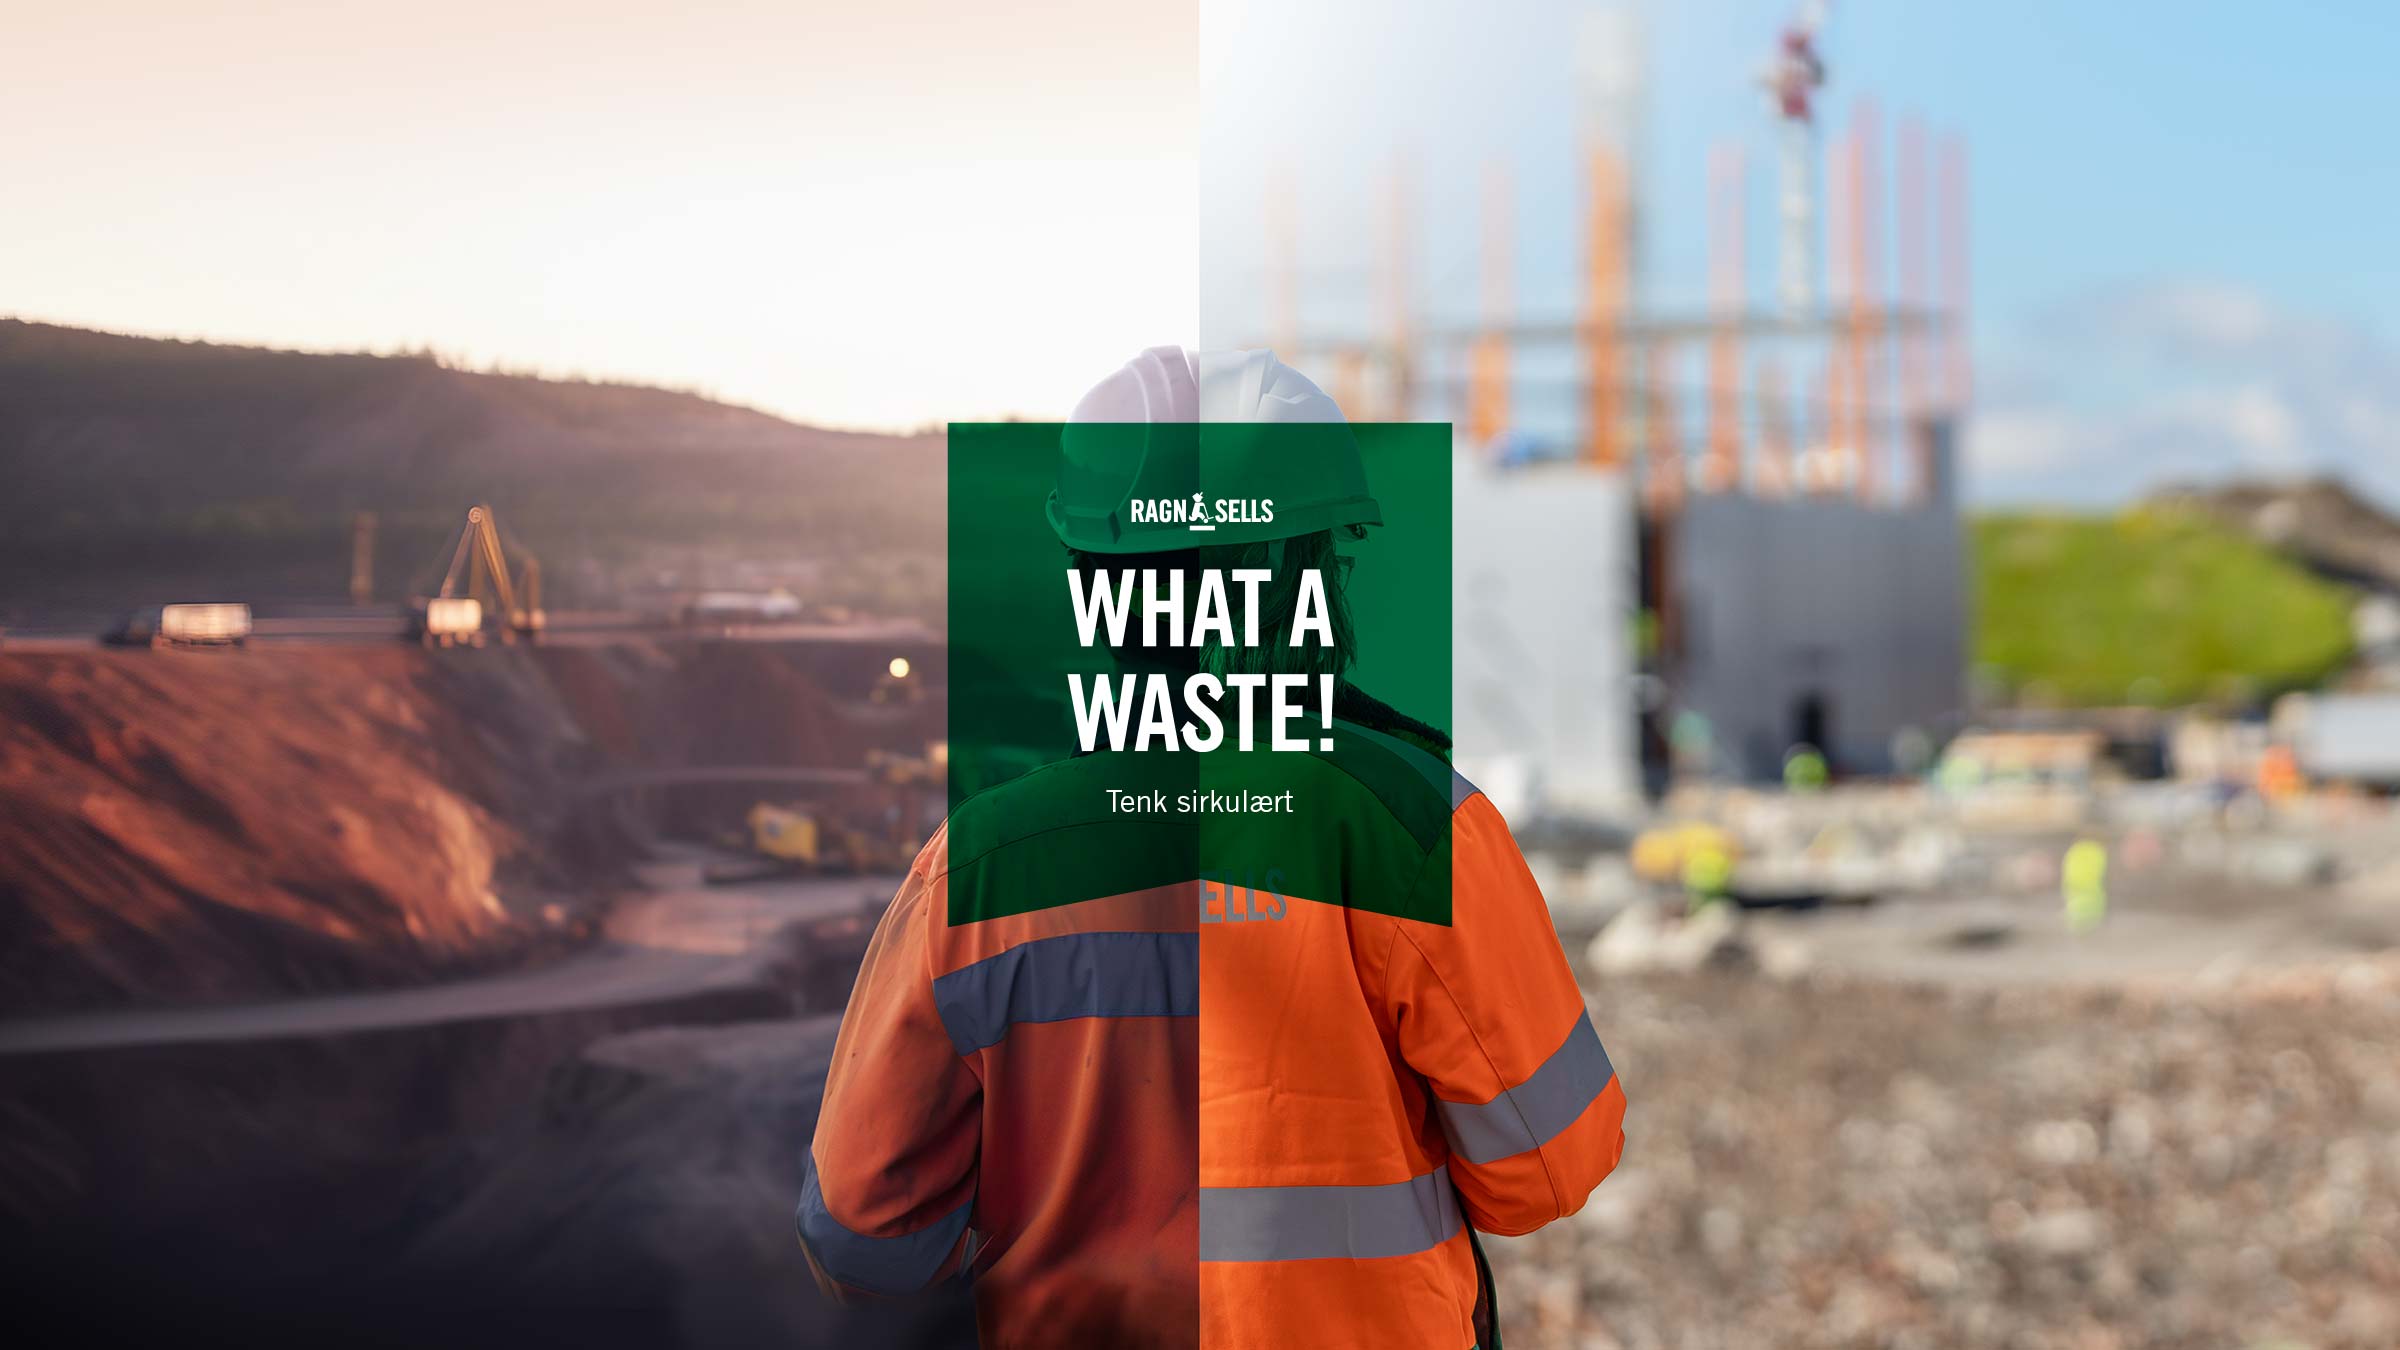 Ragn-Sells sin nye kampanje «What a waste!» har som mål å endre synet på avfall